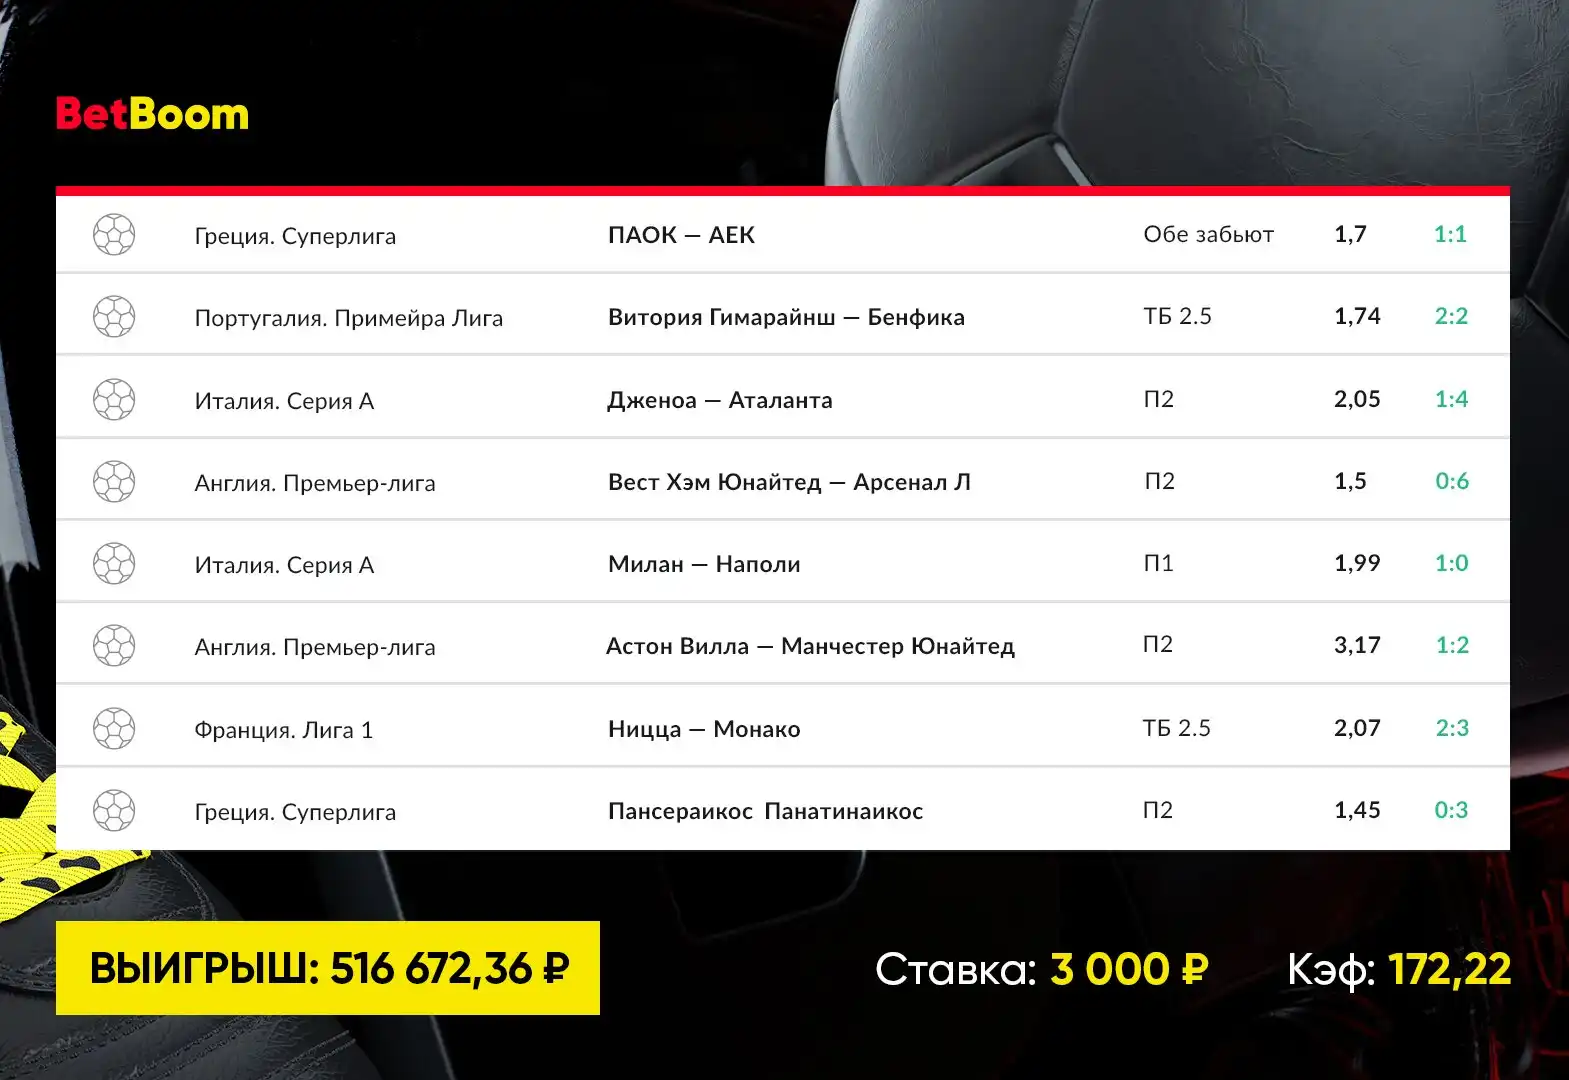 Манчестер Юнайтед продолжил серию без поражений и принес клиенту BetBoom почти 520 000 рублей выигрыша со ставки в 3000!